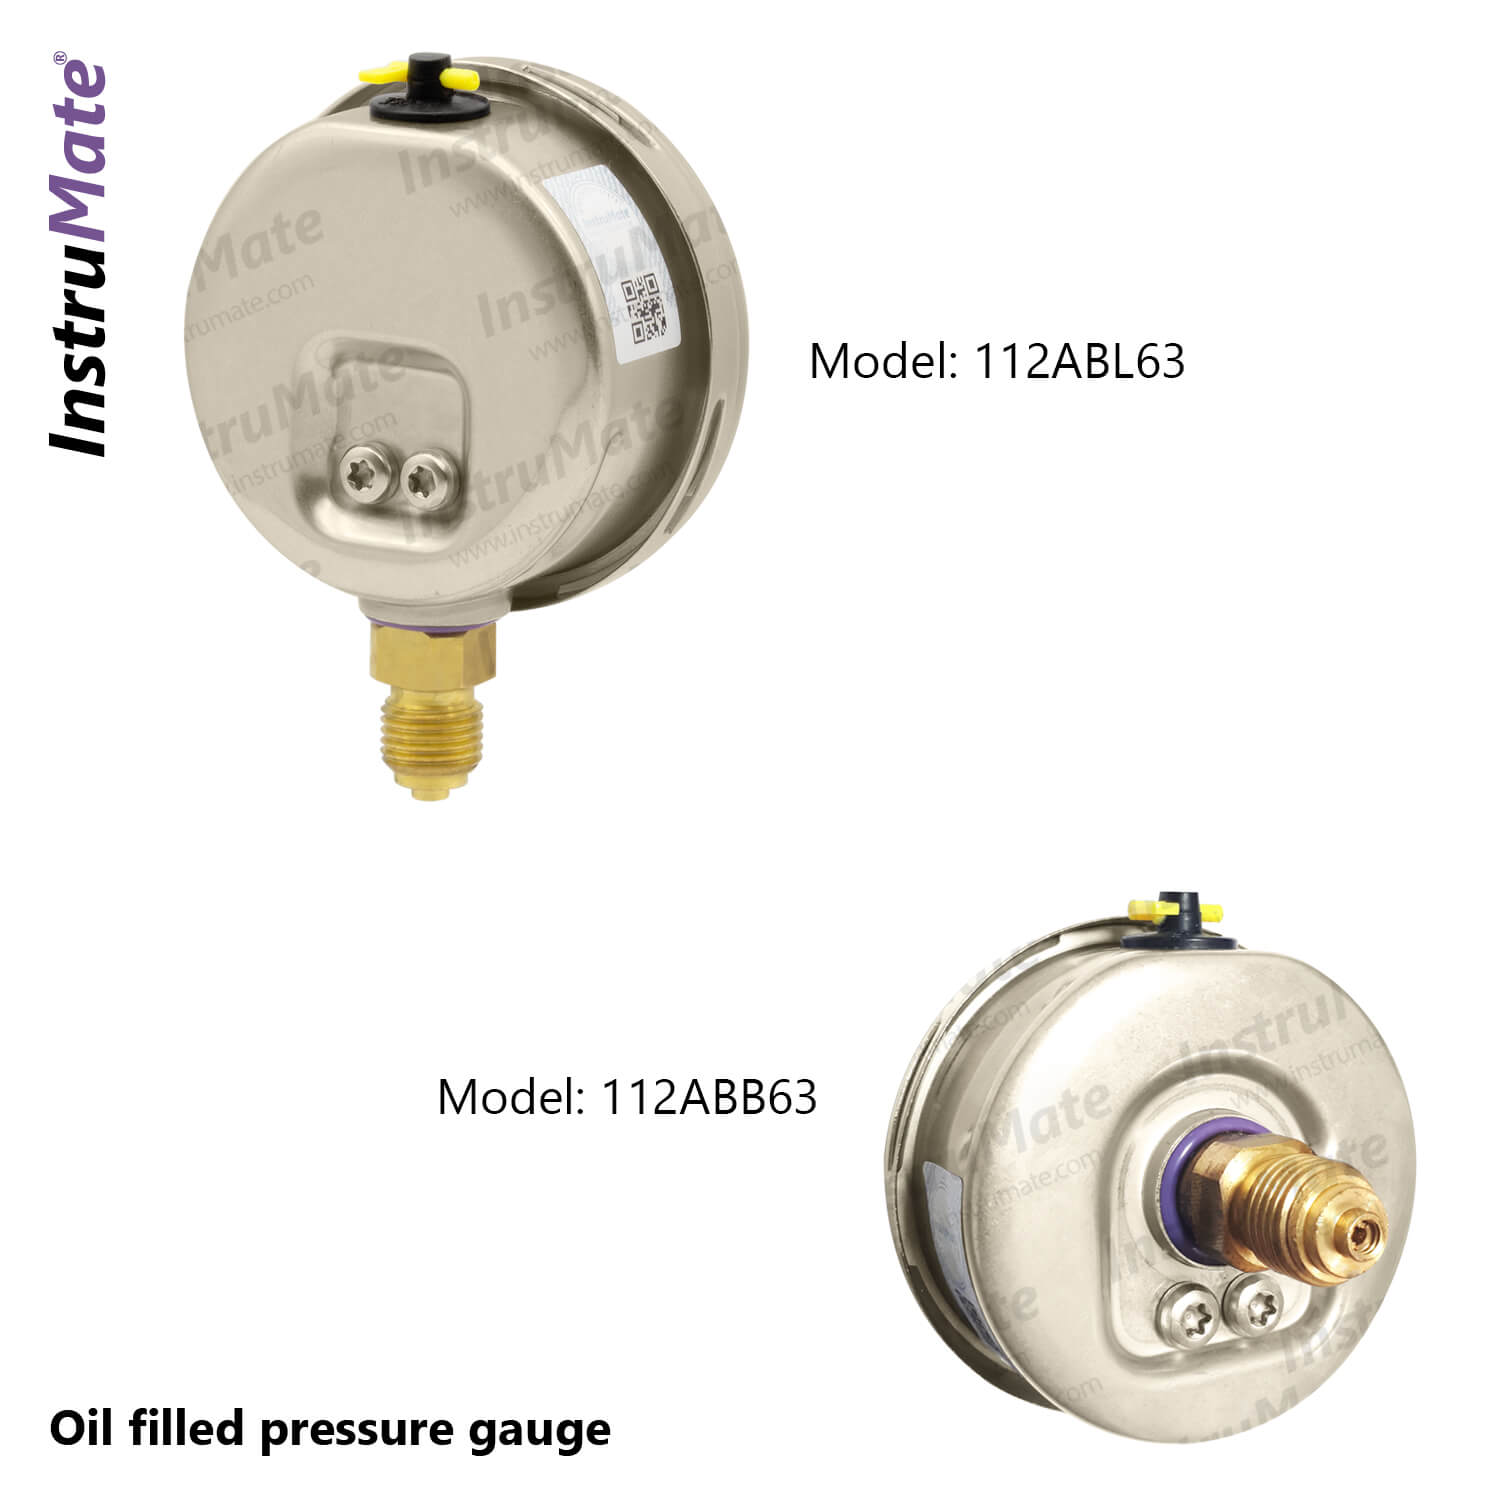 Oil Filled Pressure Gauge - 112AB - InstruMate